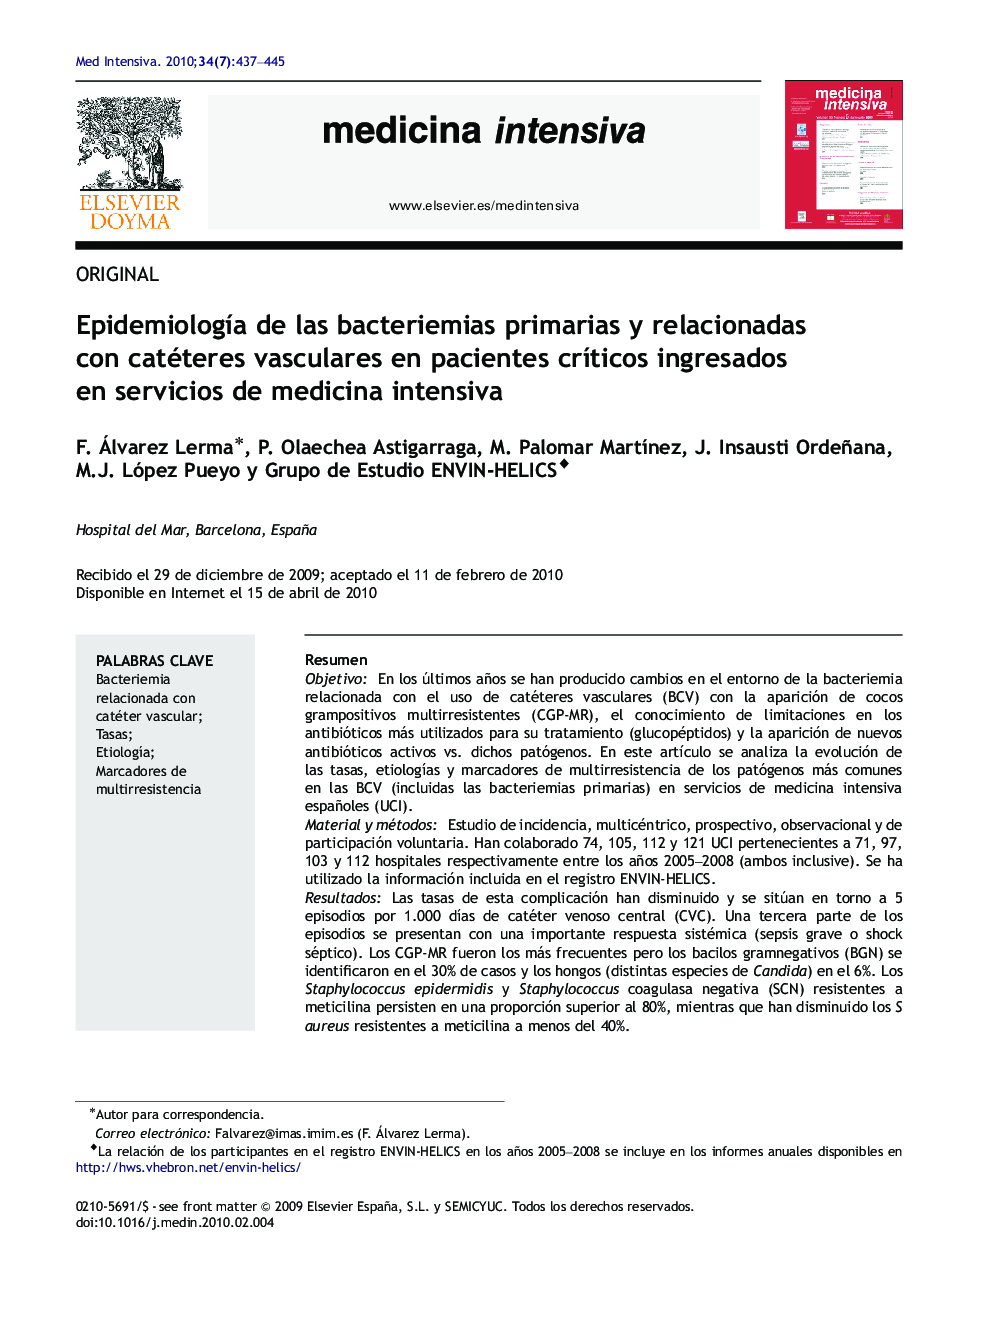 Epidemiología de las bacteriemias primarias y relacionadas con catéteres vasculares en pacientes críticos ingresados en servicios de medicina intensiva